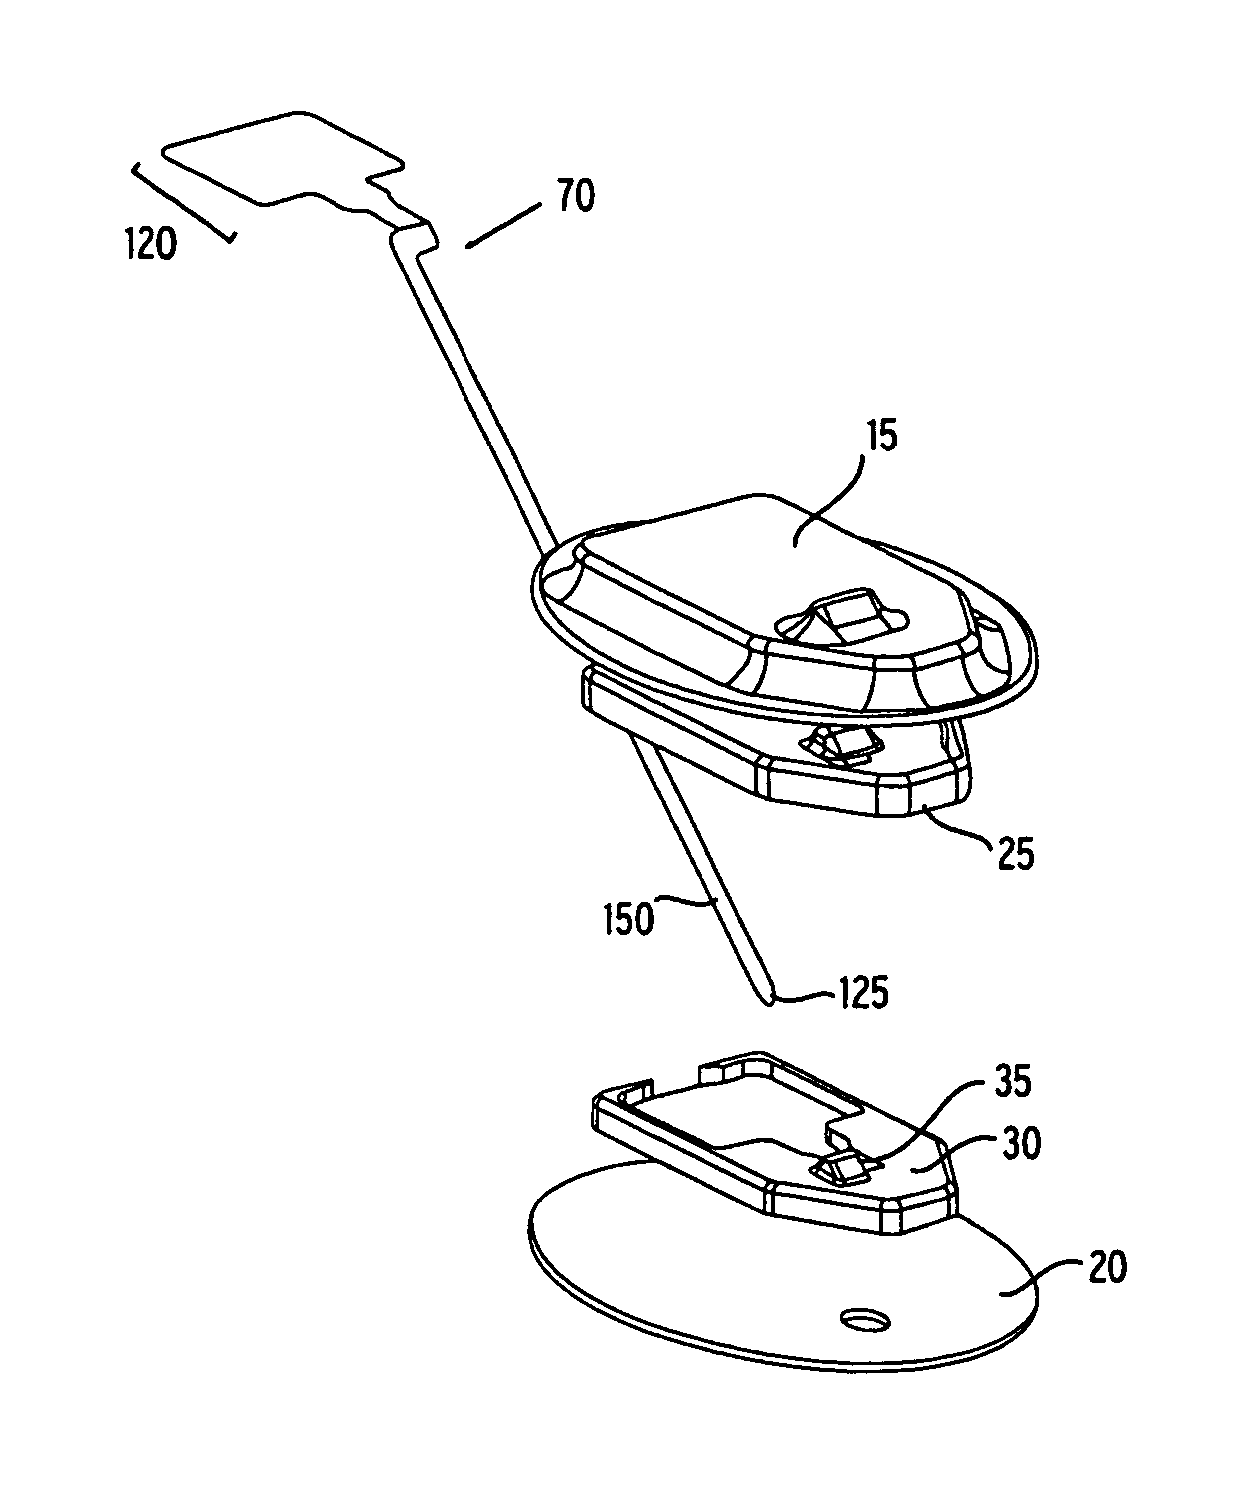 Flexible sensor apparatus